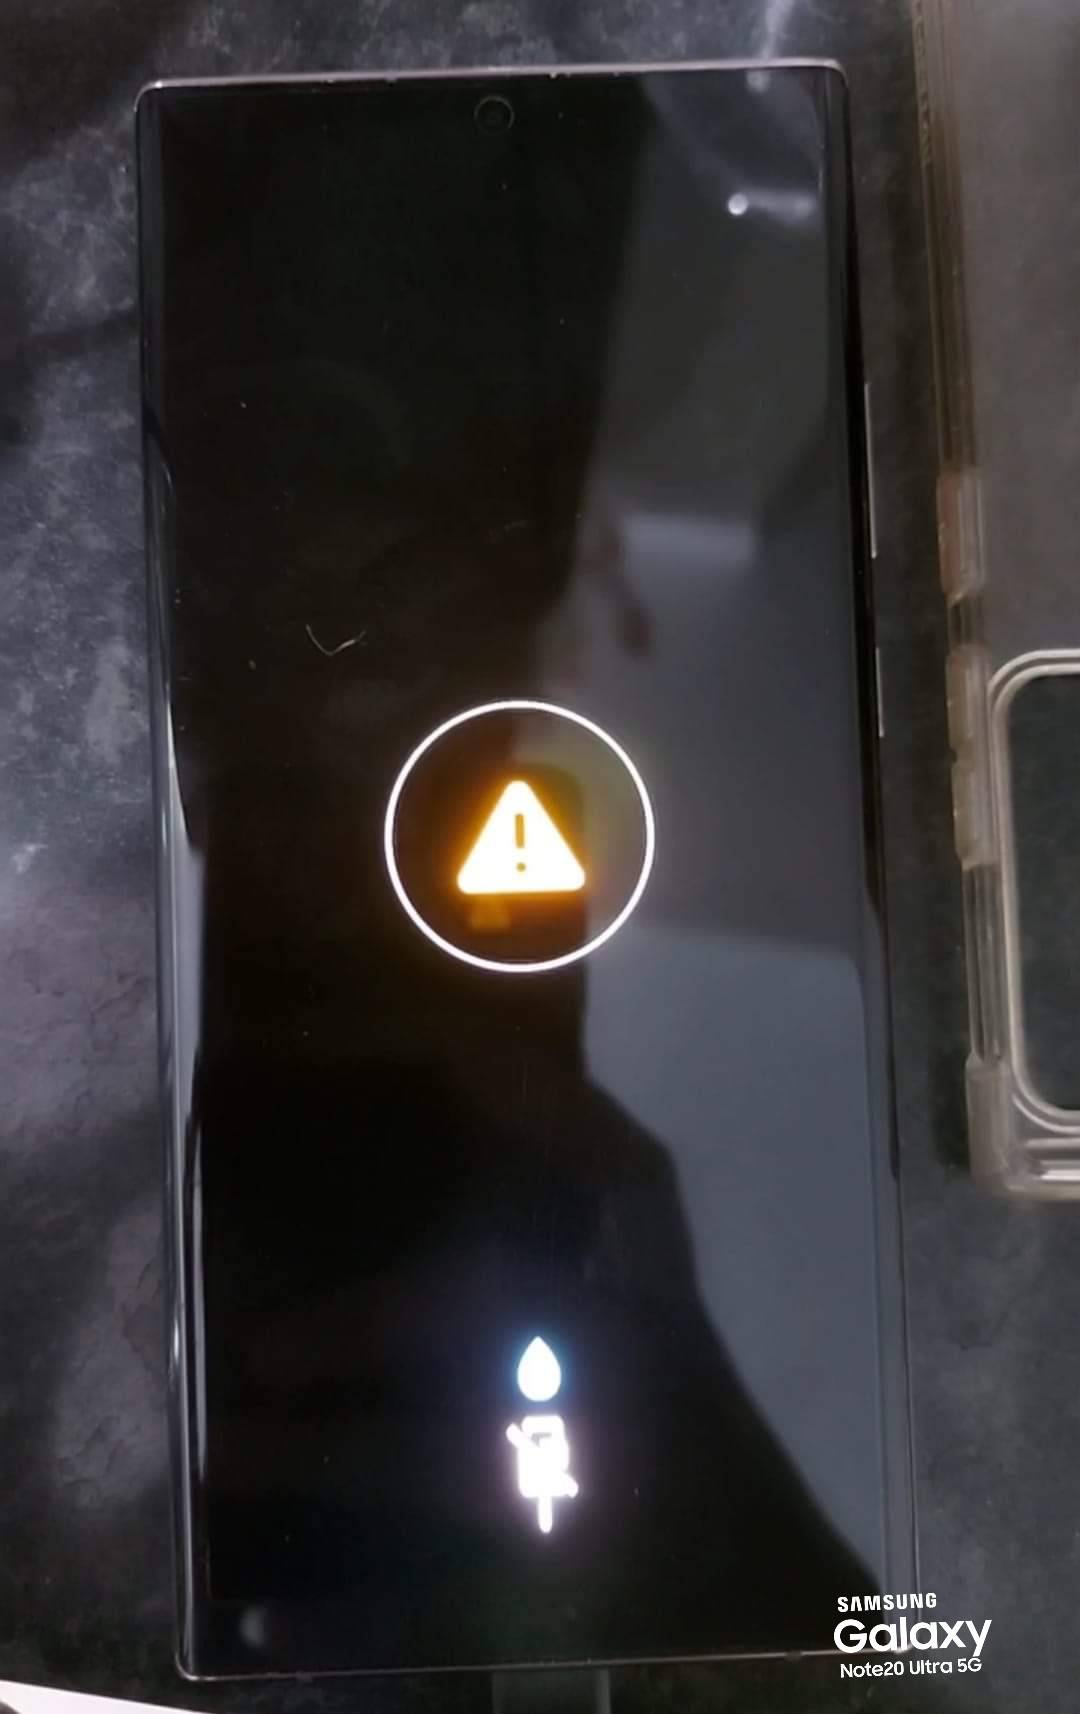 porta USB acusa humidade/ não carrega - Samsung Community